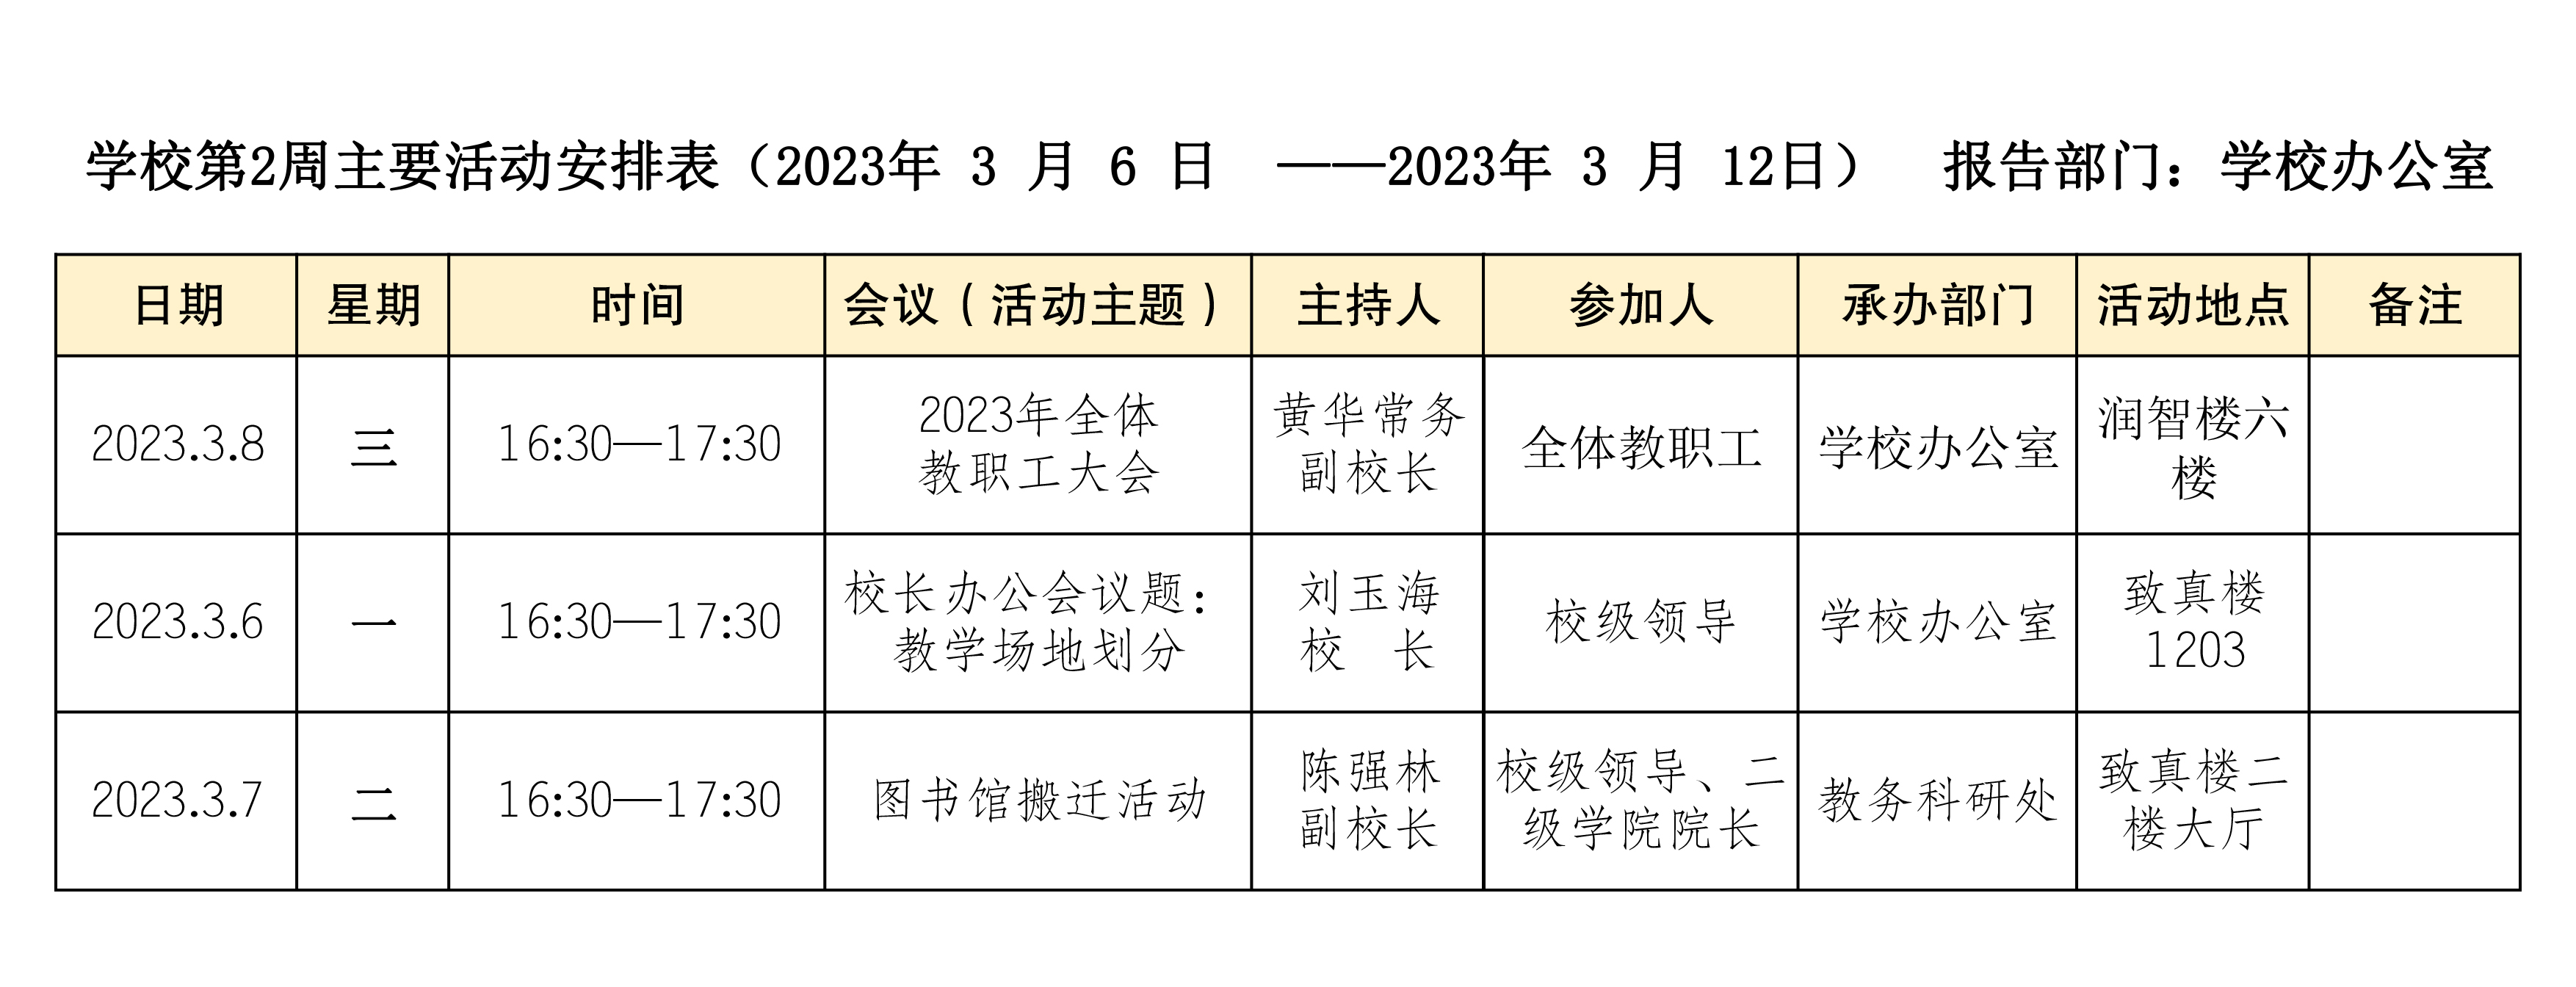 第2周主要活动安排表（2023年 3 月 6 日  ——2023年 3 月 12日）  报告部门：学校办公室